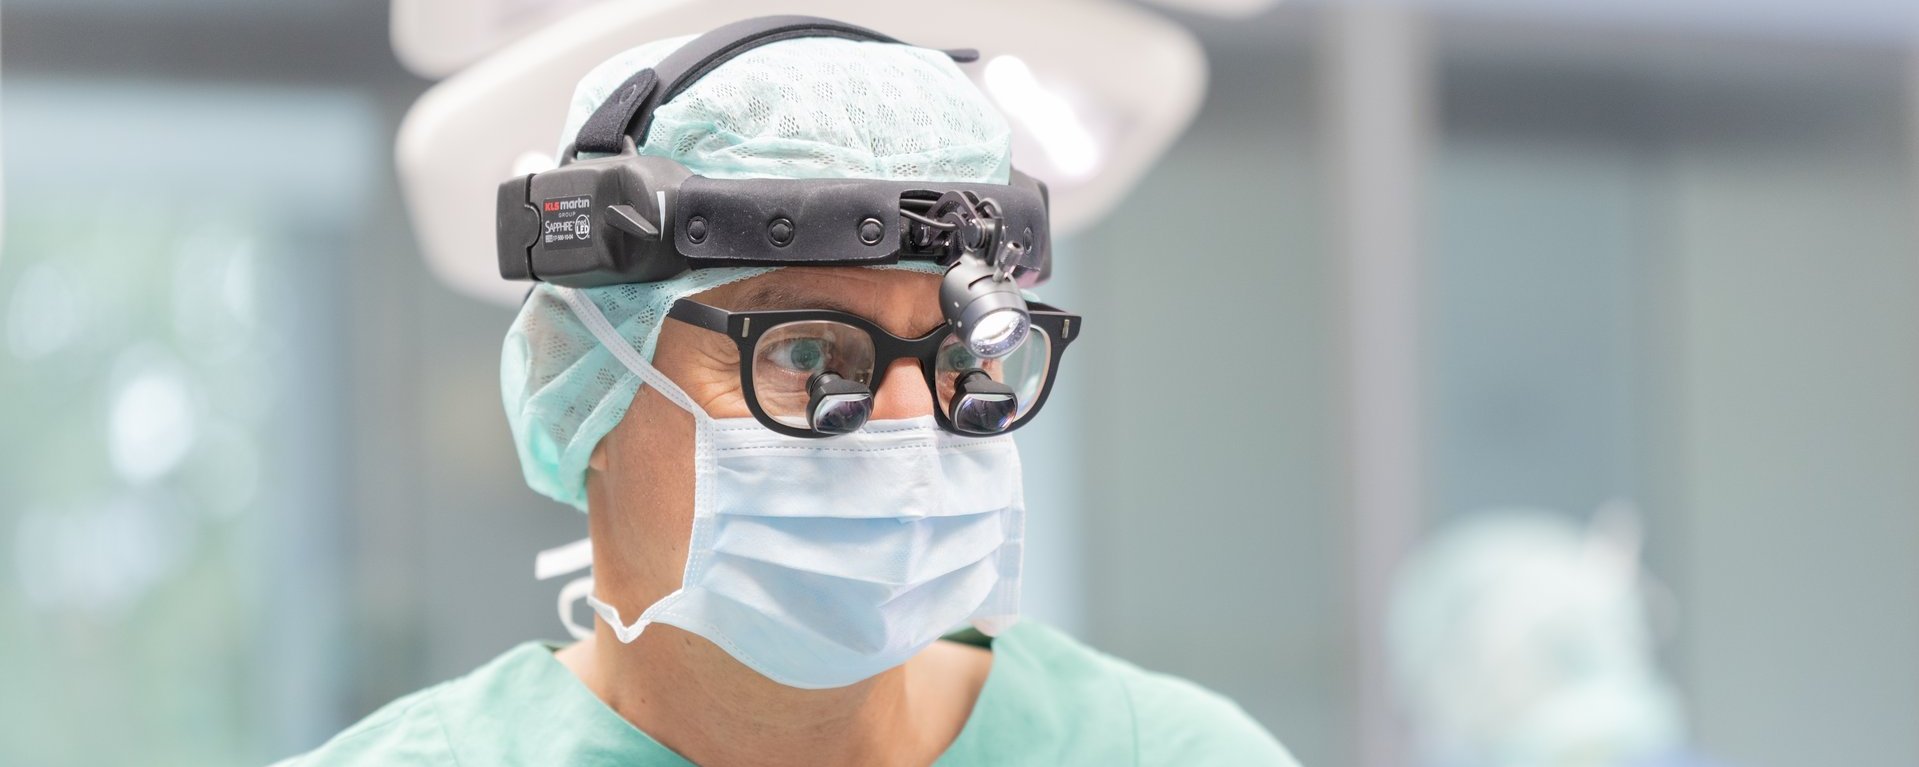 Auf dem Bild ist ein Chirurg zu sehen. Dieser hat eine Brille mit einer Vergrößerung, ein Kopflicht und eine OP-Maske auf.